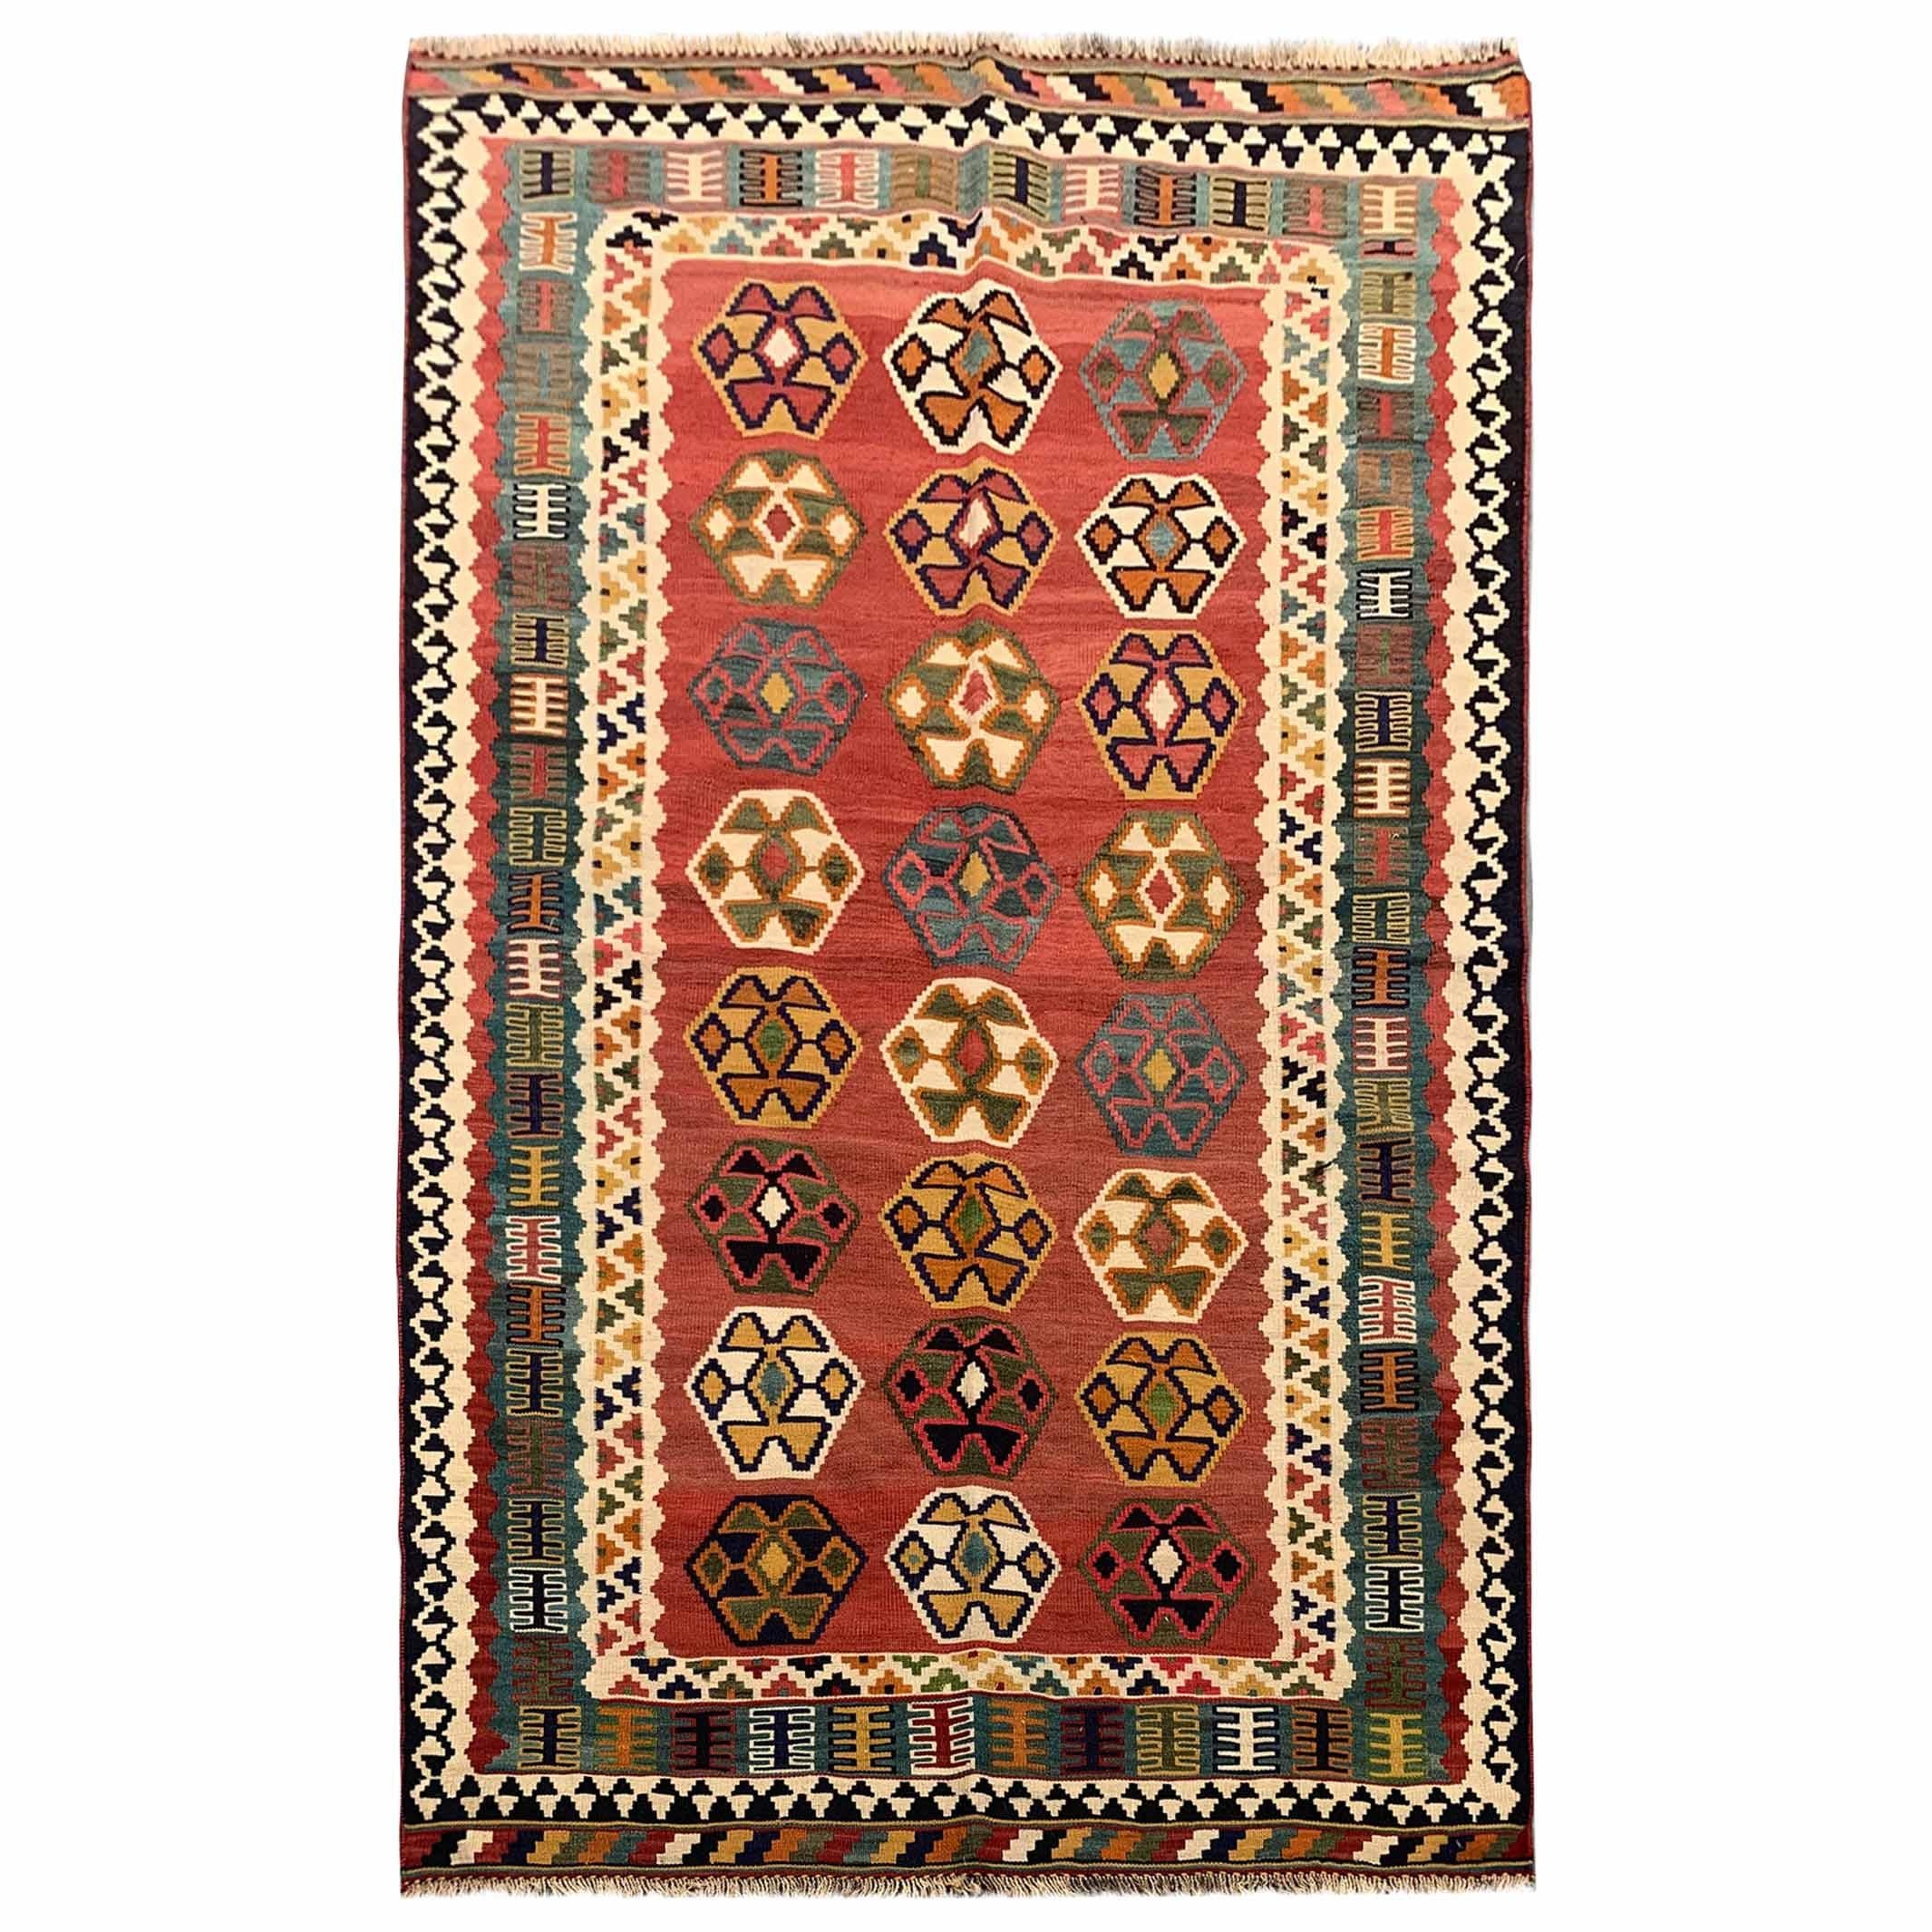 Antique Kilim Rugs for Sale Caucasian Kilims Carpet  For Sale